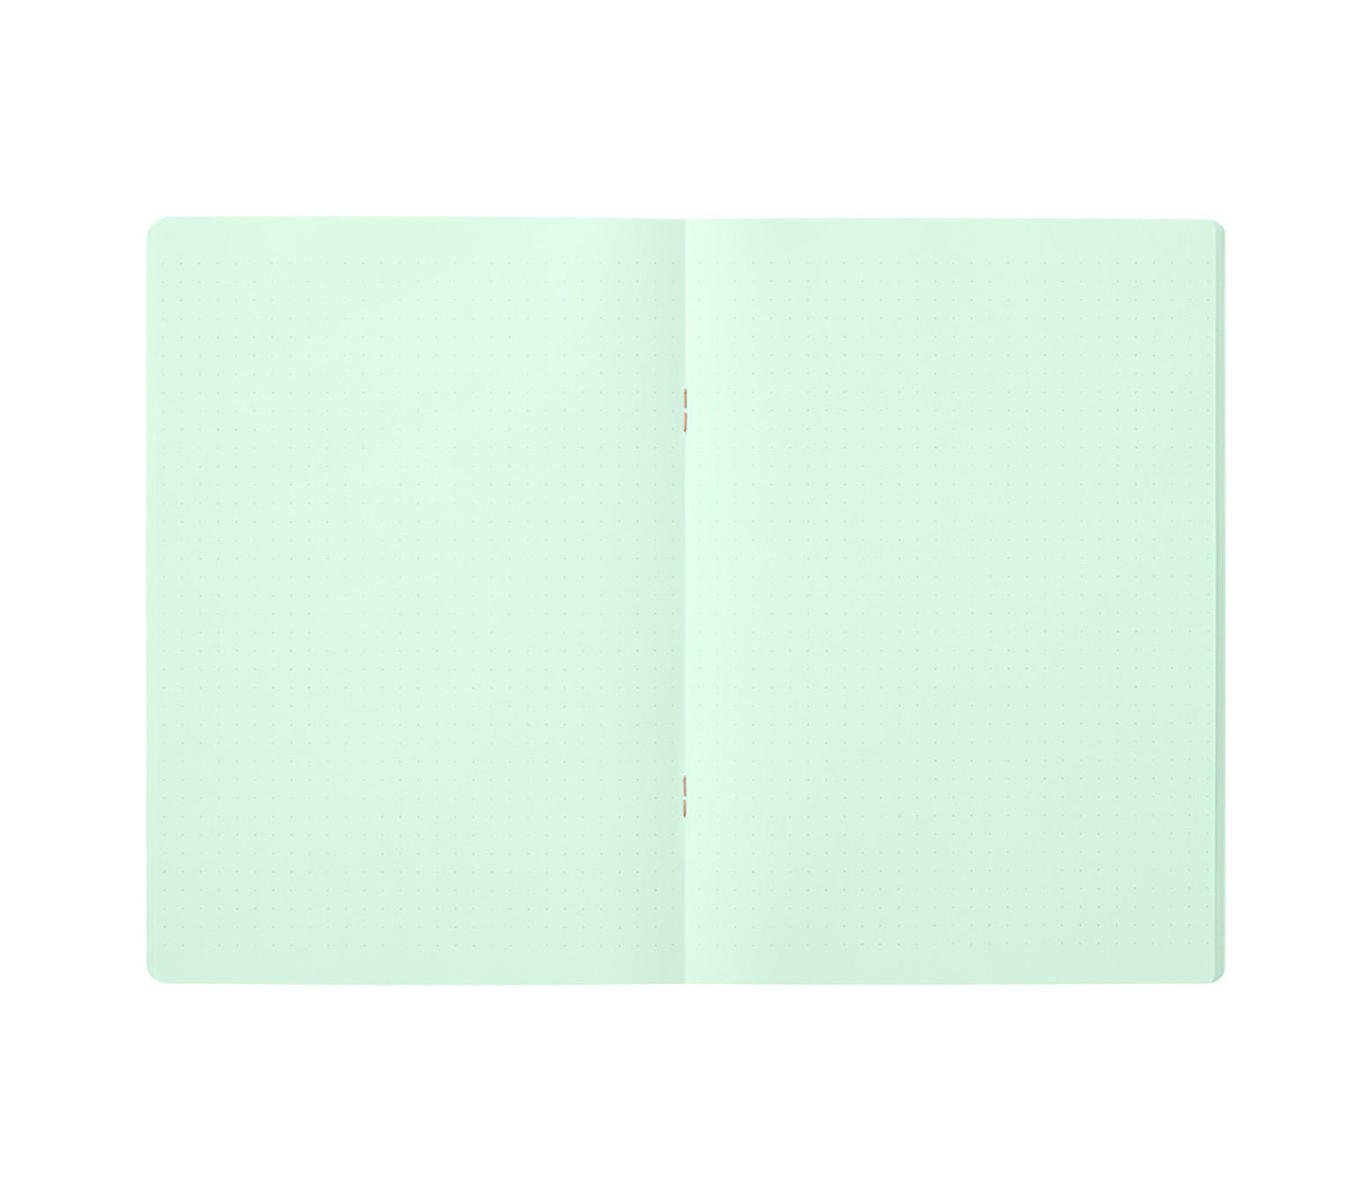 A5 Green Dot Grid Notebook